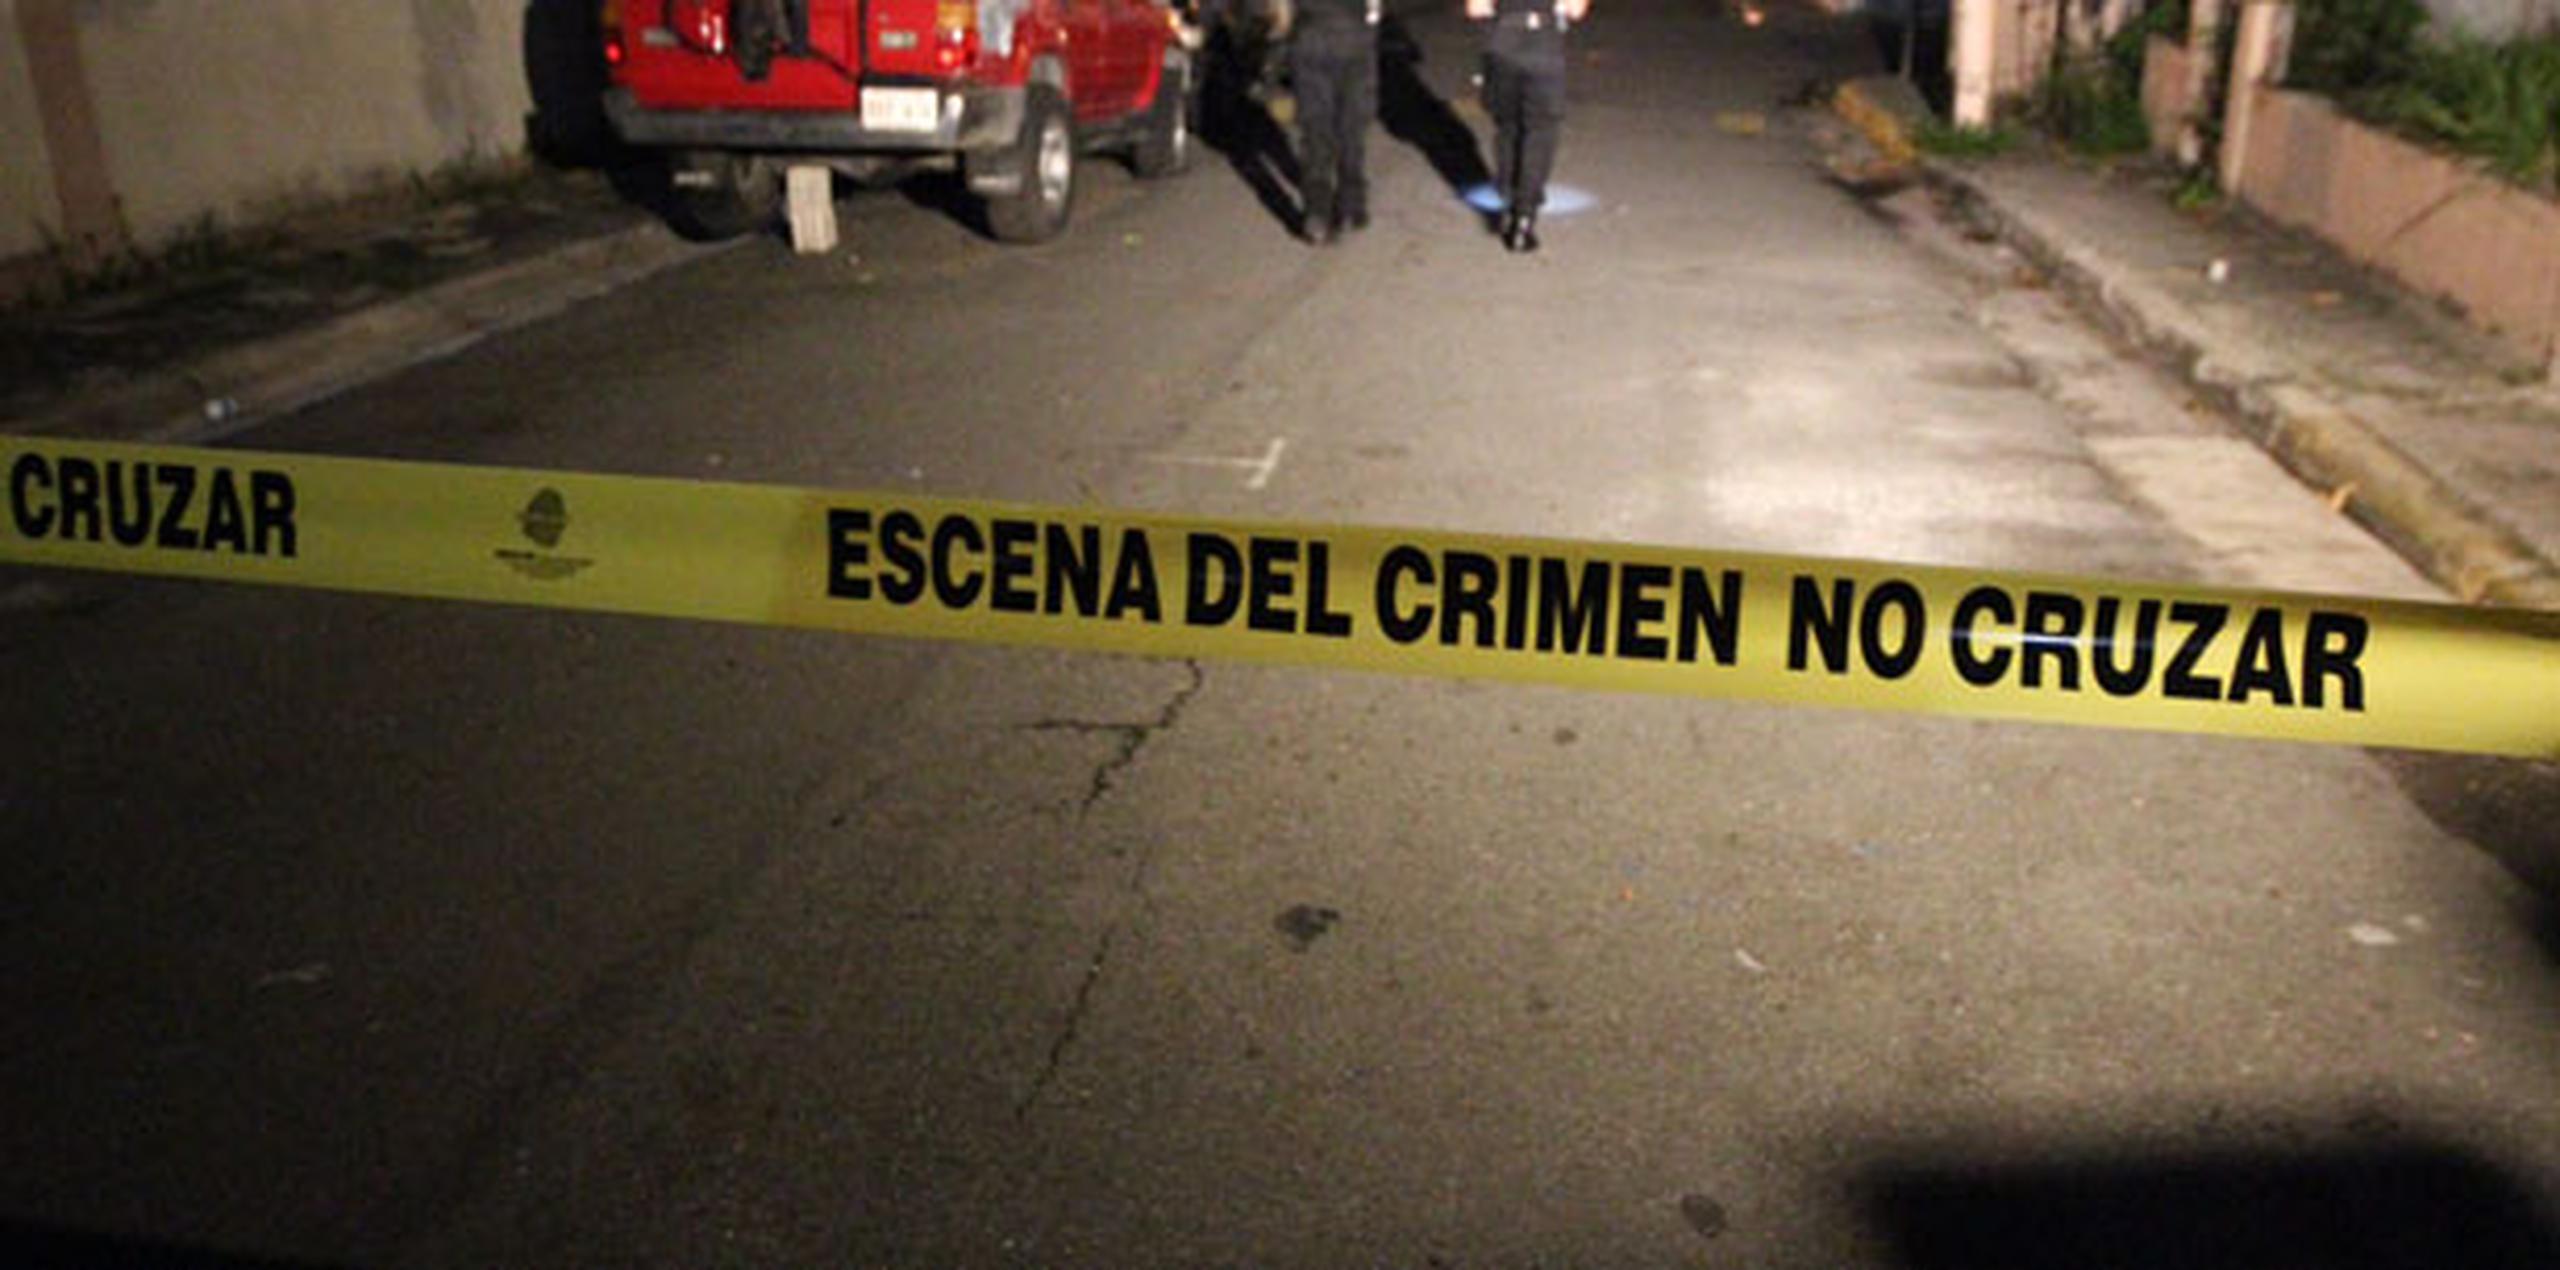 La víctima, identificada como Miguel Rodríguez Vega, de 39 años, fue transportada en un vehículo privado al Hospital San Lucas de Arroyo donde se certificó su muerte. (Archivo)